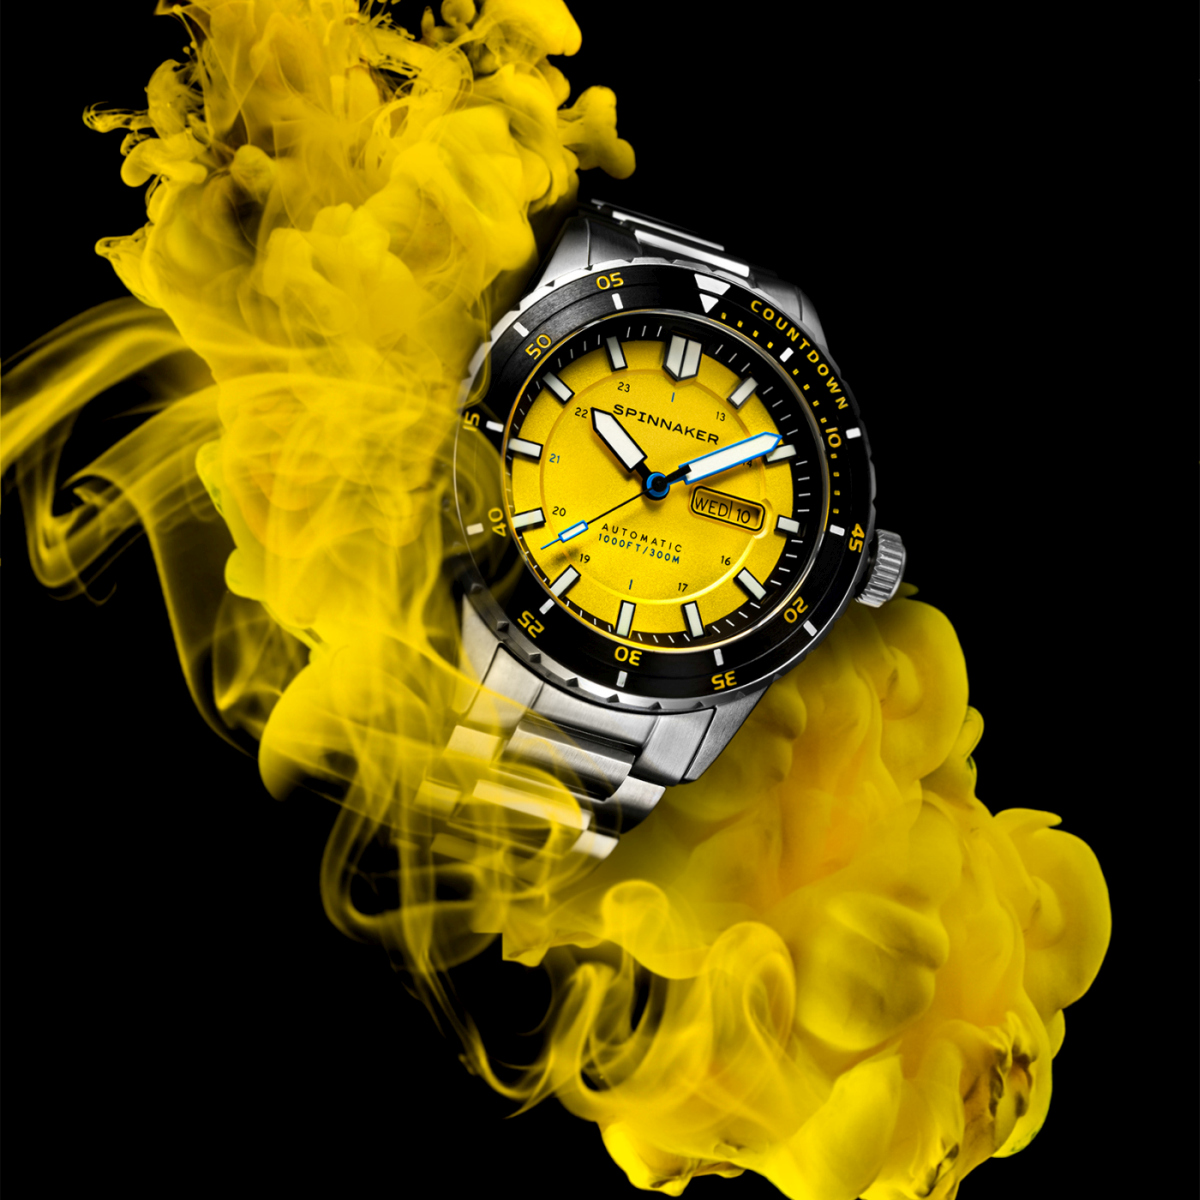 イタリア発の腕時計「SPINNAKER」の新作ダイバーズウォッチ「HASS AUTOMATIC」 - HEROES ONLINE